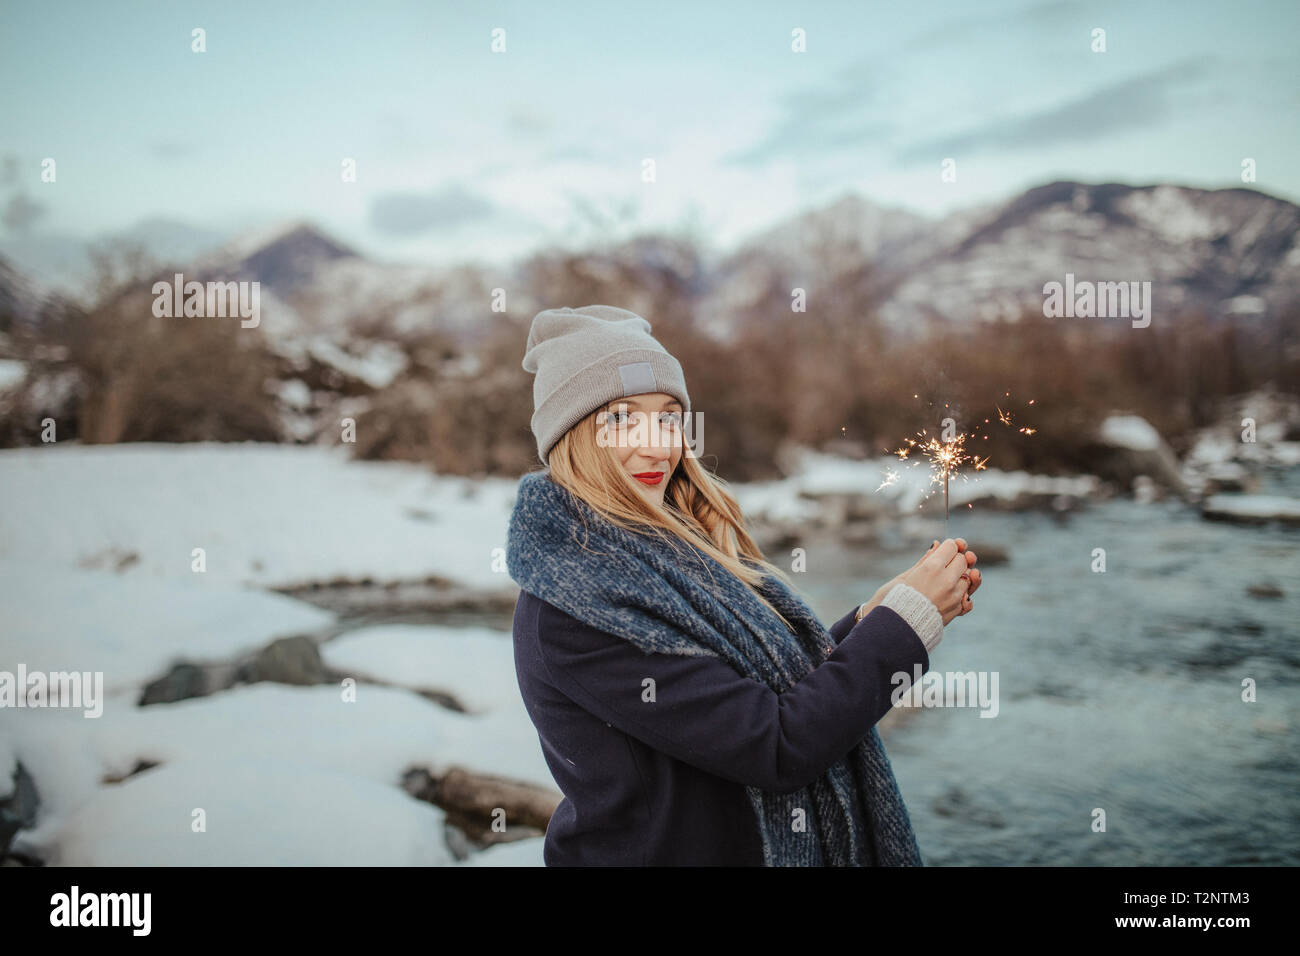 Donna in maglia hat holding sparkler sulla coperta di neve riverbank, ritratto, Orta, Piemonte, Italia Foto Stock